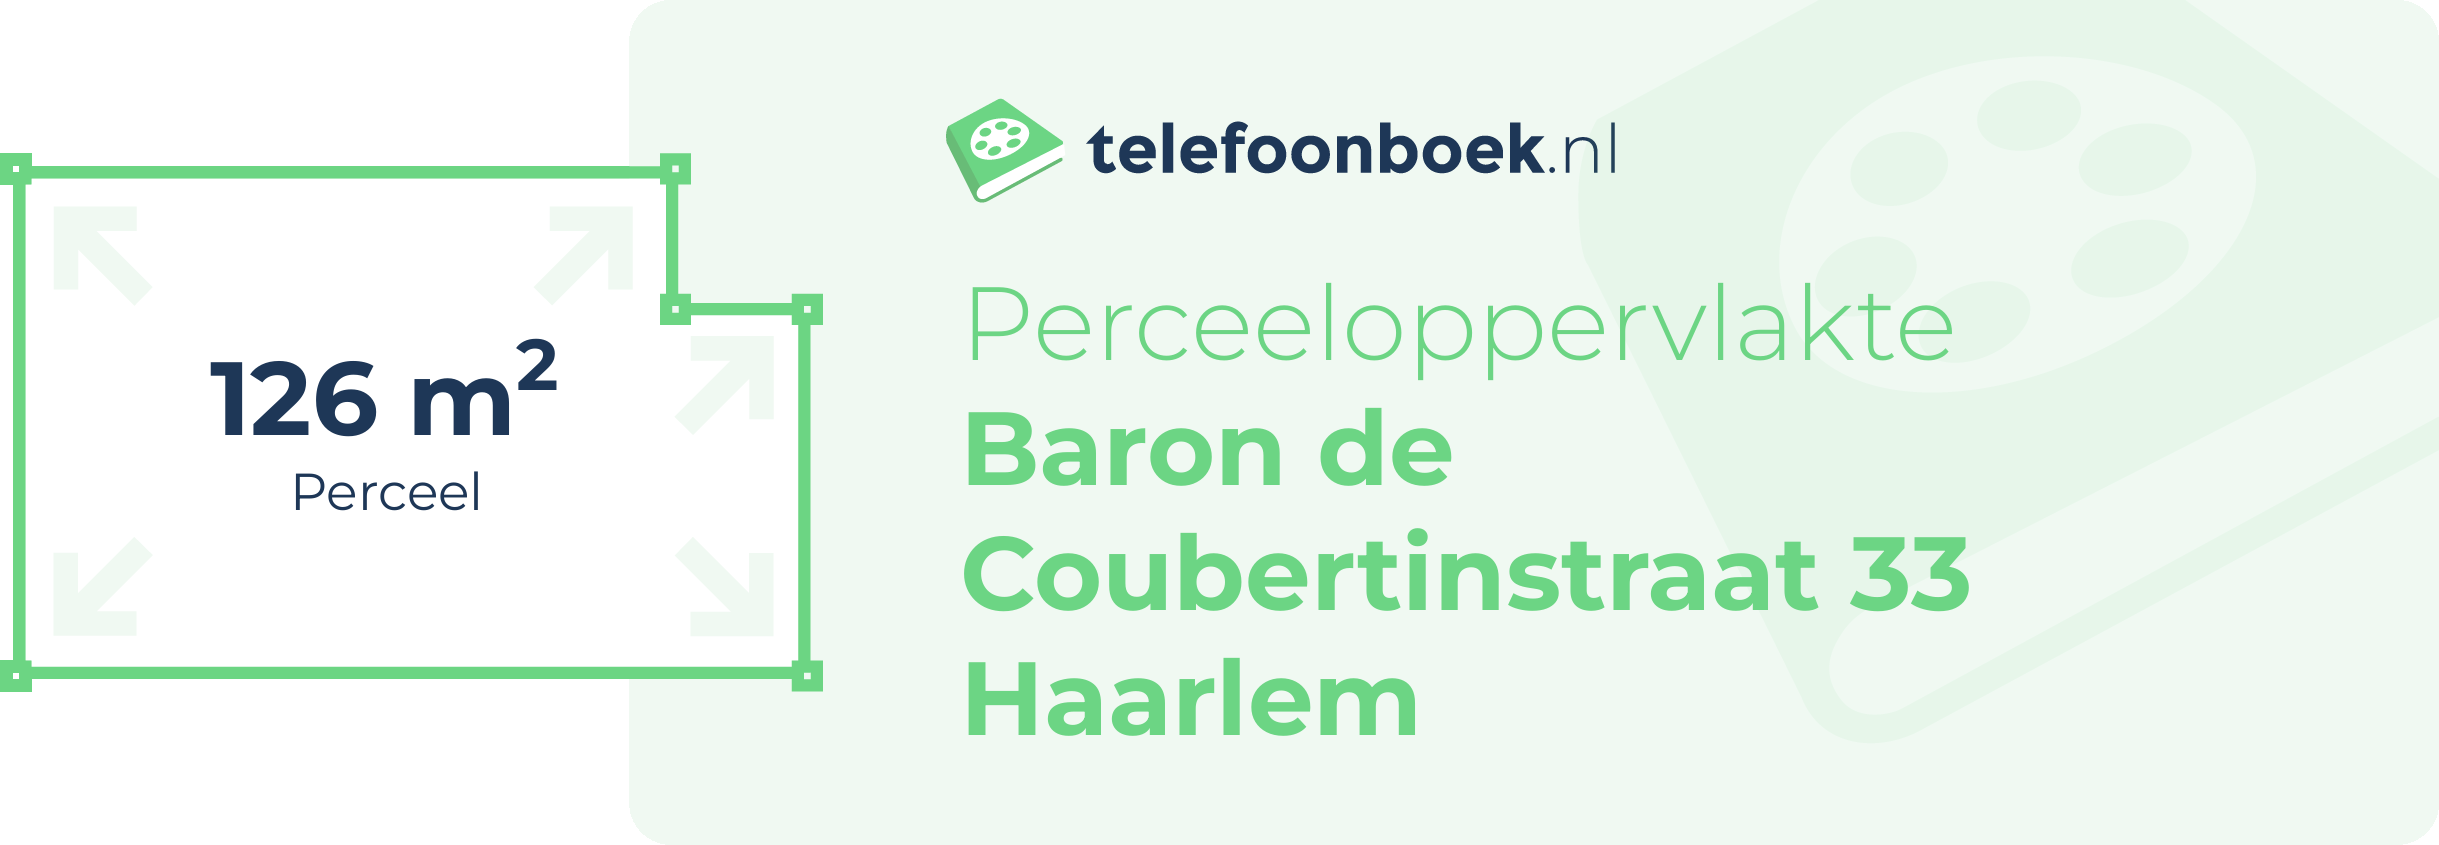 Perceeloppervlakte Baron De Coubertinstraat 33 Haarlem